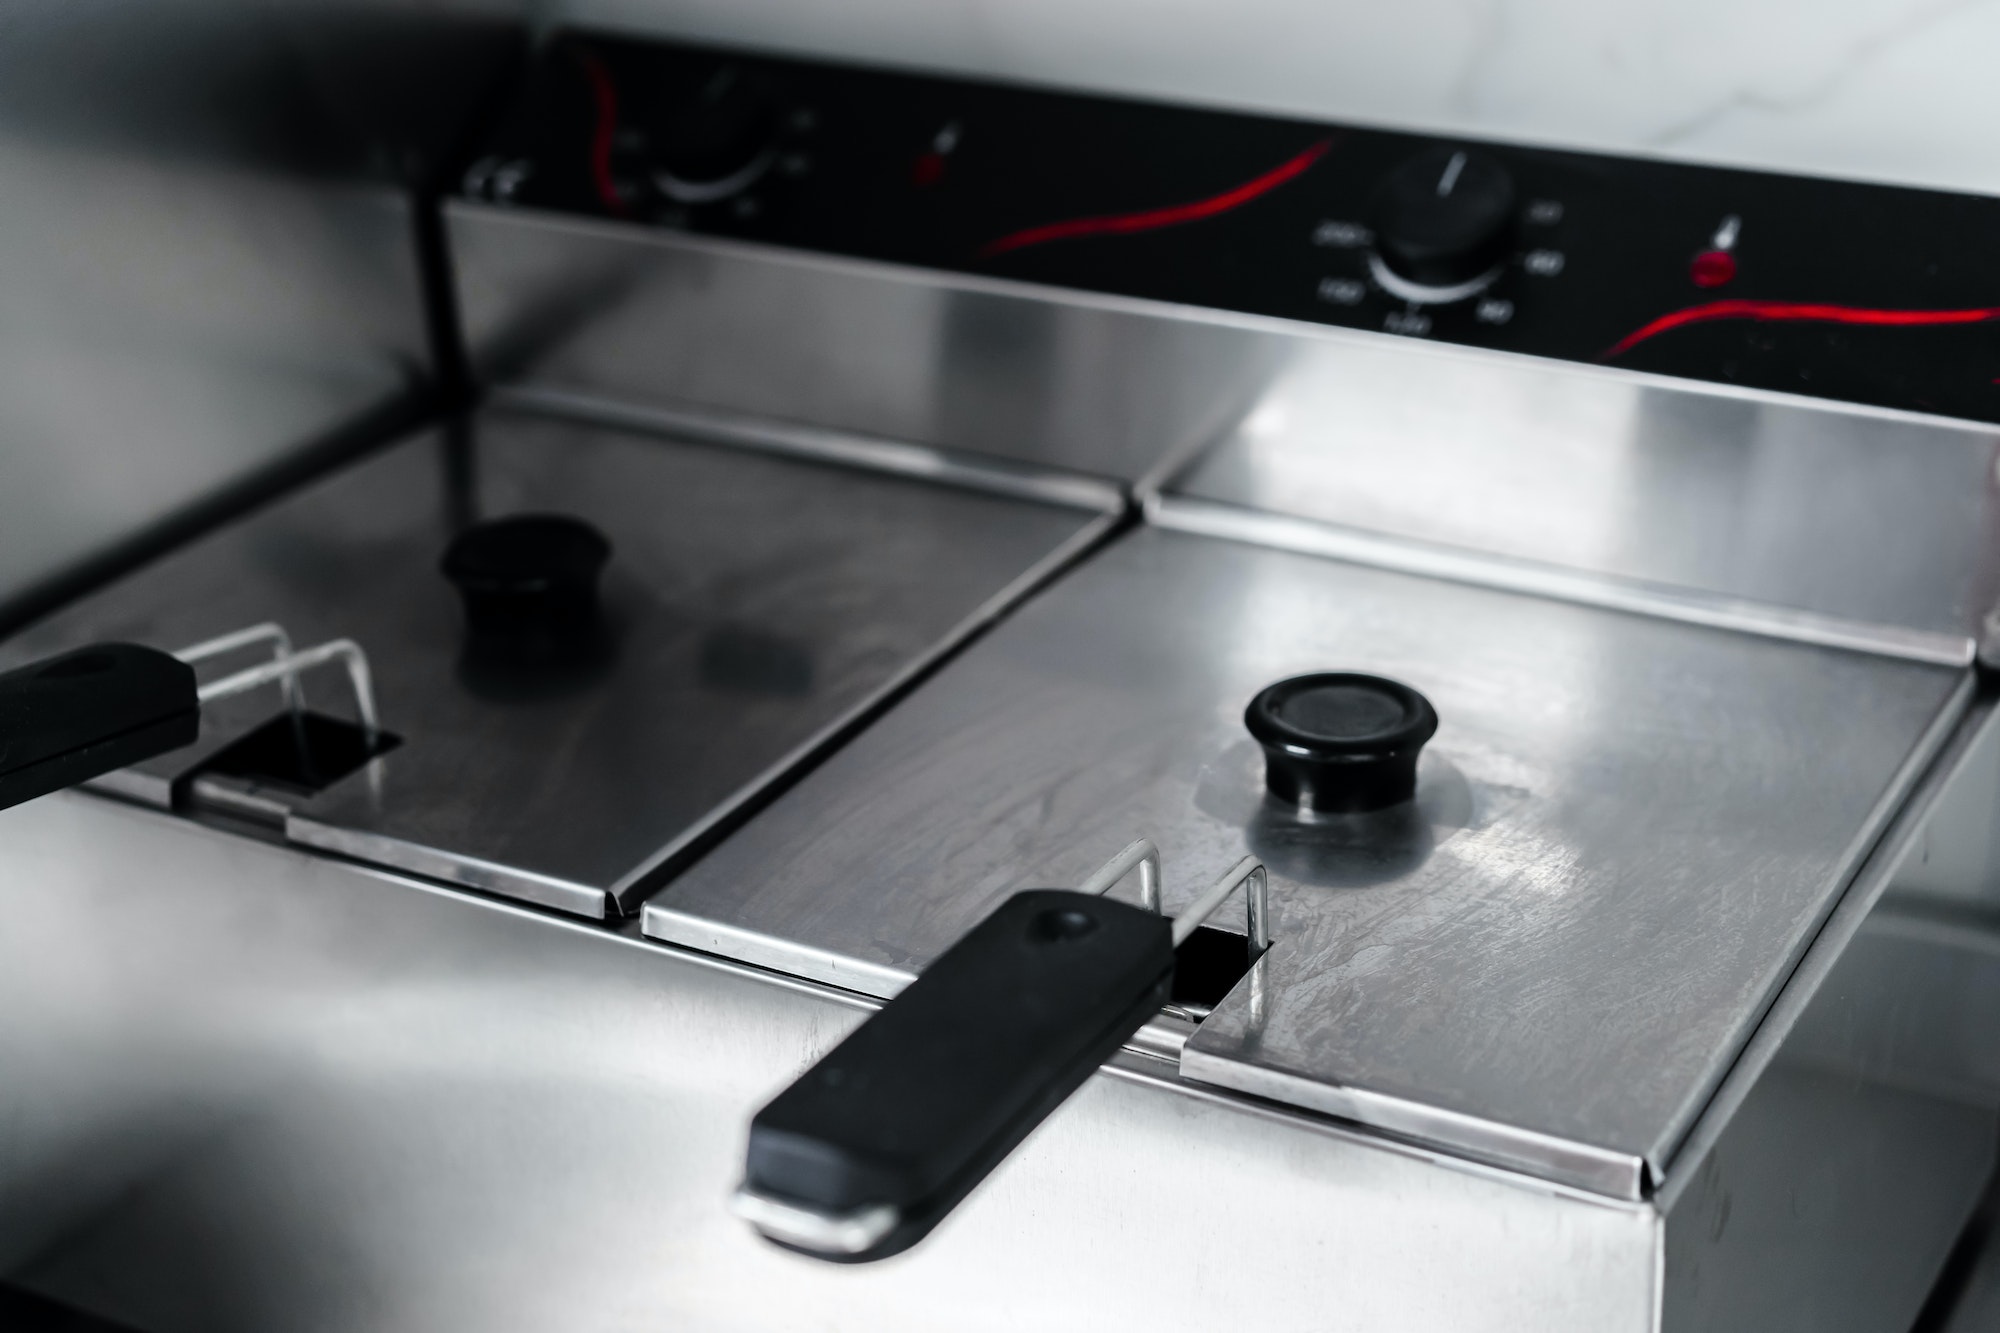 Stainless steel deep fryer machine in professional kitchen